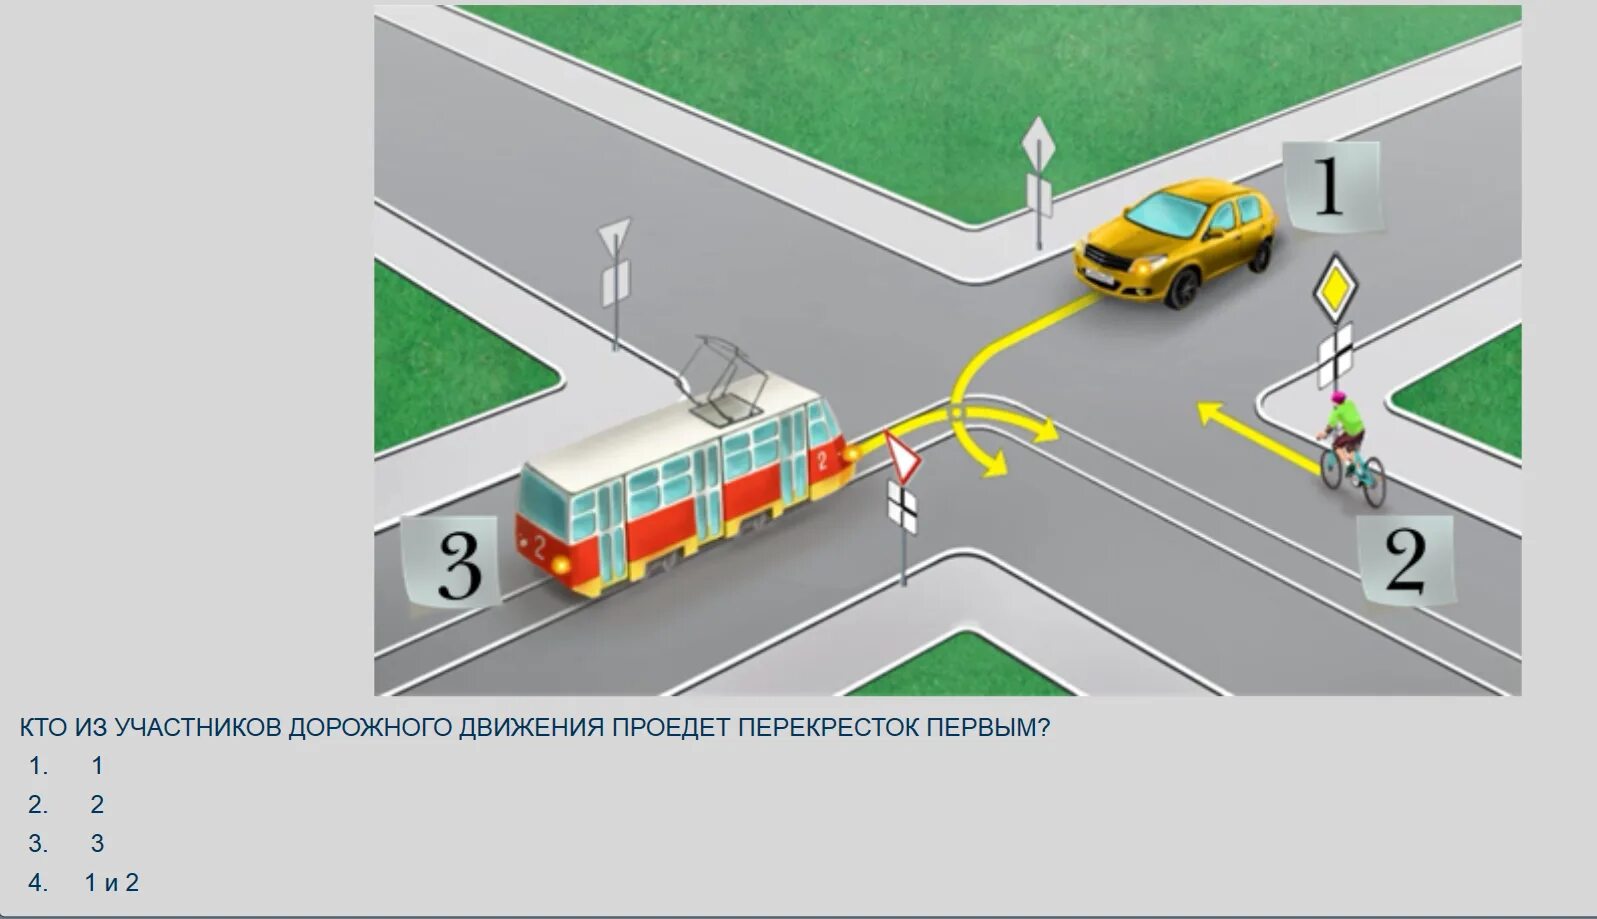 Регулируемый перекресток с трамвайными путями. Регулируемый перекресток с трамваем. Схема перекрестка с трамвайными путями. Порядок проезда перекрестков. Правила проезда регулируемых и нерегулируемых перекрестков